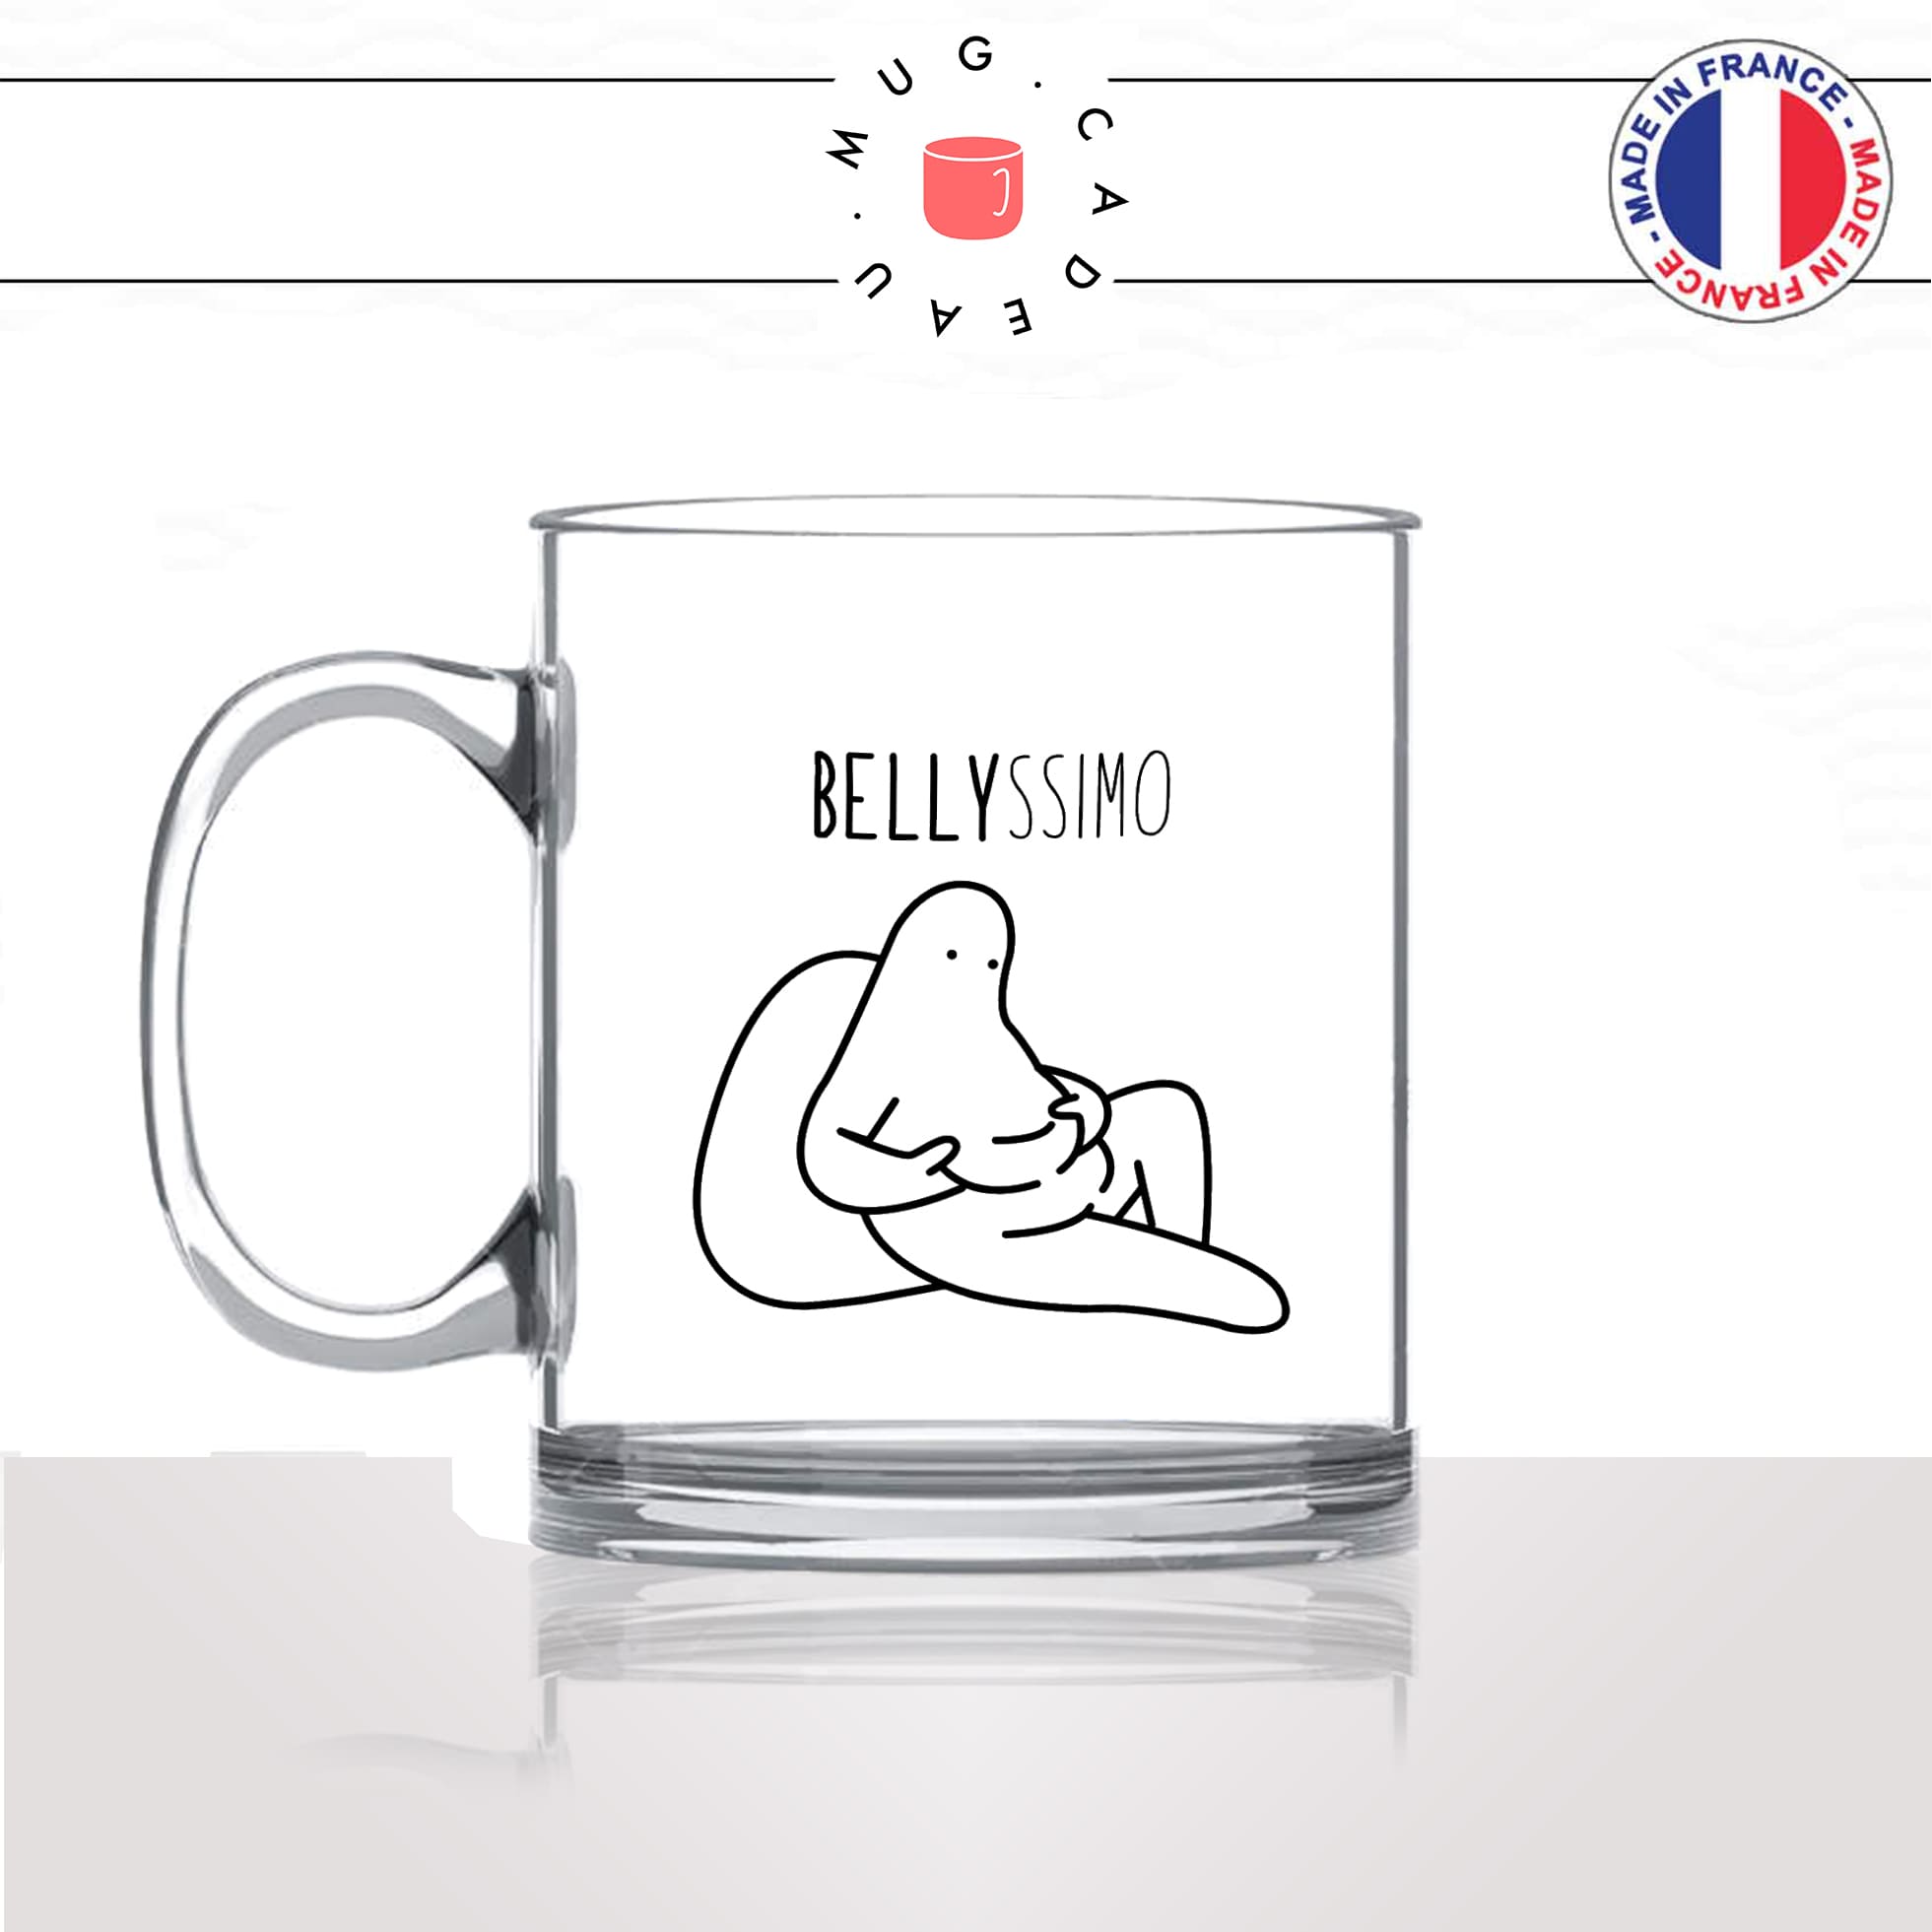 mug-tasse-en-verre-transparent-glass-belly-ssimo-bellissimo-italien-ventregros-gras-regime-femme-homme-humour-idée-cadeau-fun-cool-café-thé